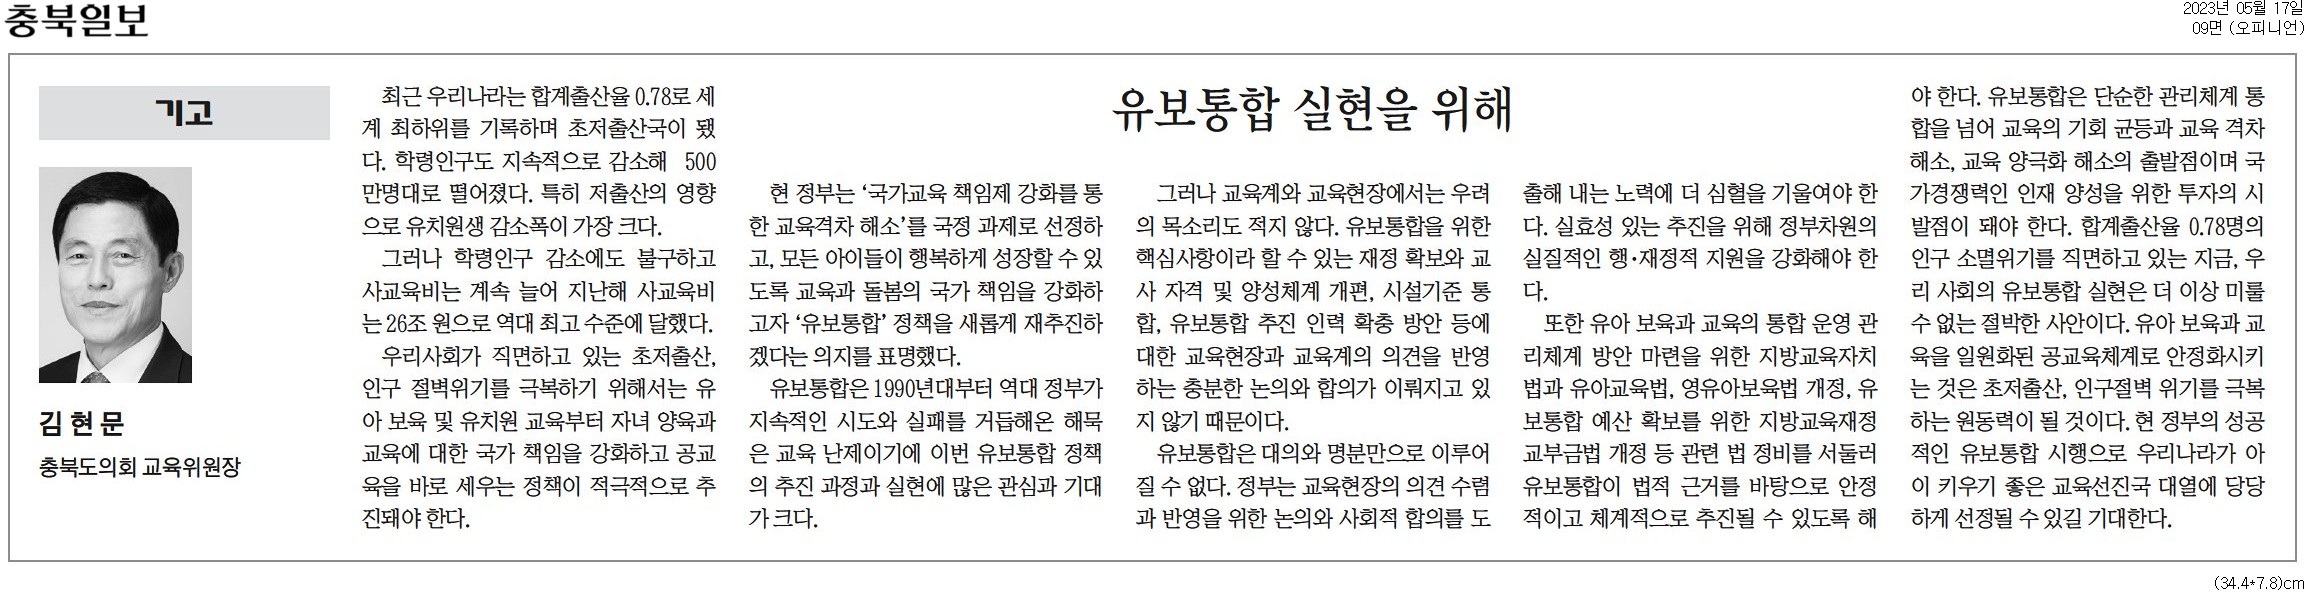 유보통합 실현을 위해 _김현문 의원(충북일보 230517) - 1